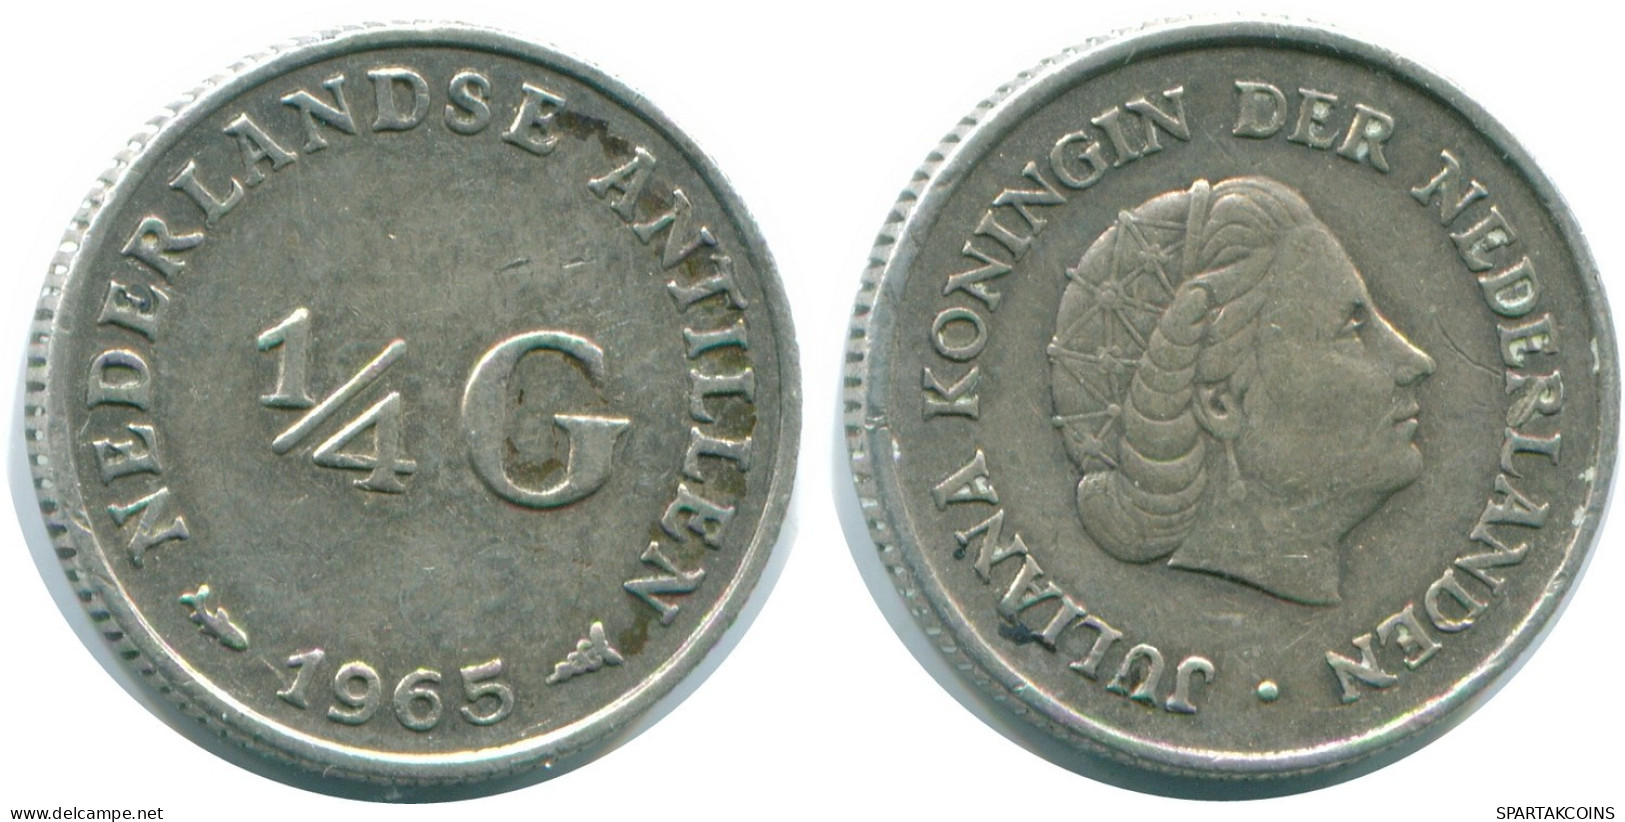 1/4 GULDEN 1965 NIEDERLÄNDISCHE ANTILLEN SILBER Koloniale Münze #NL11366.4.D.A - Antilles Néerlandaises